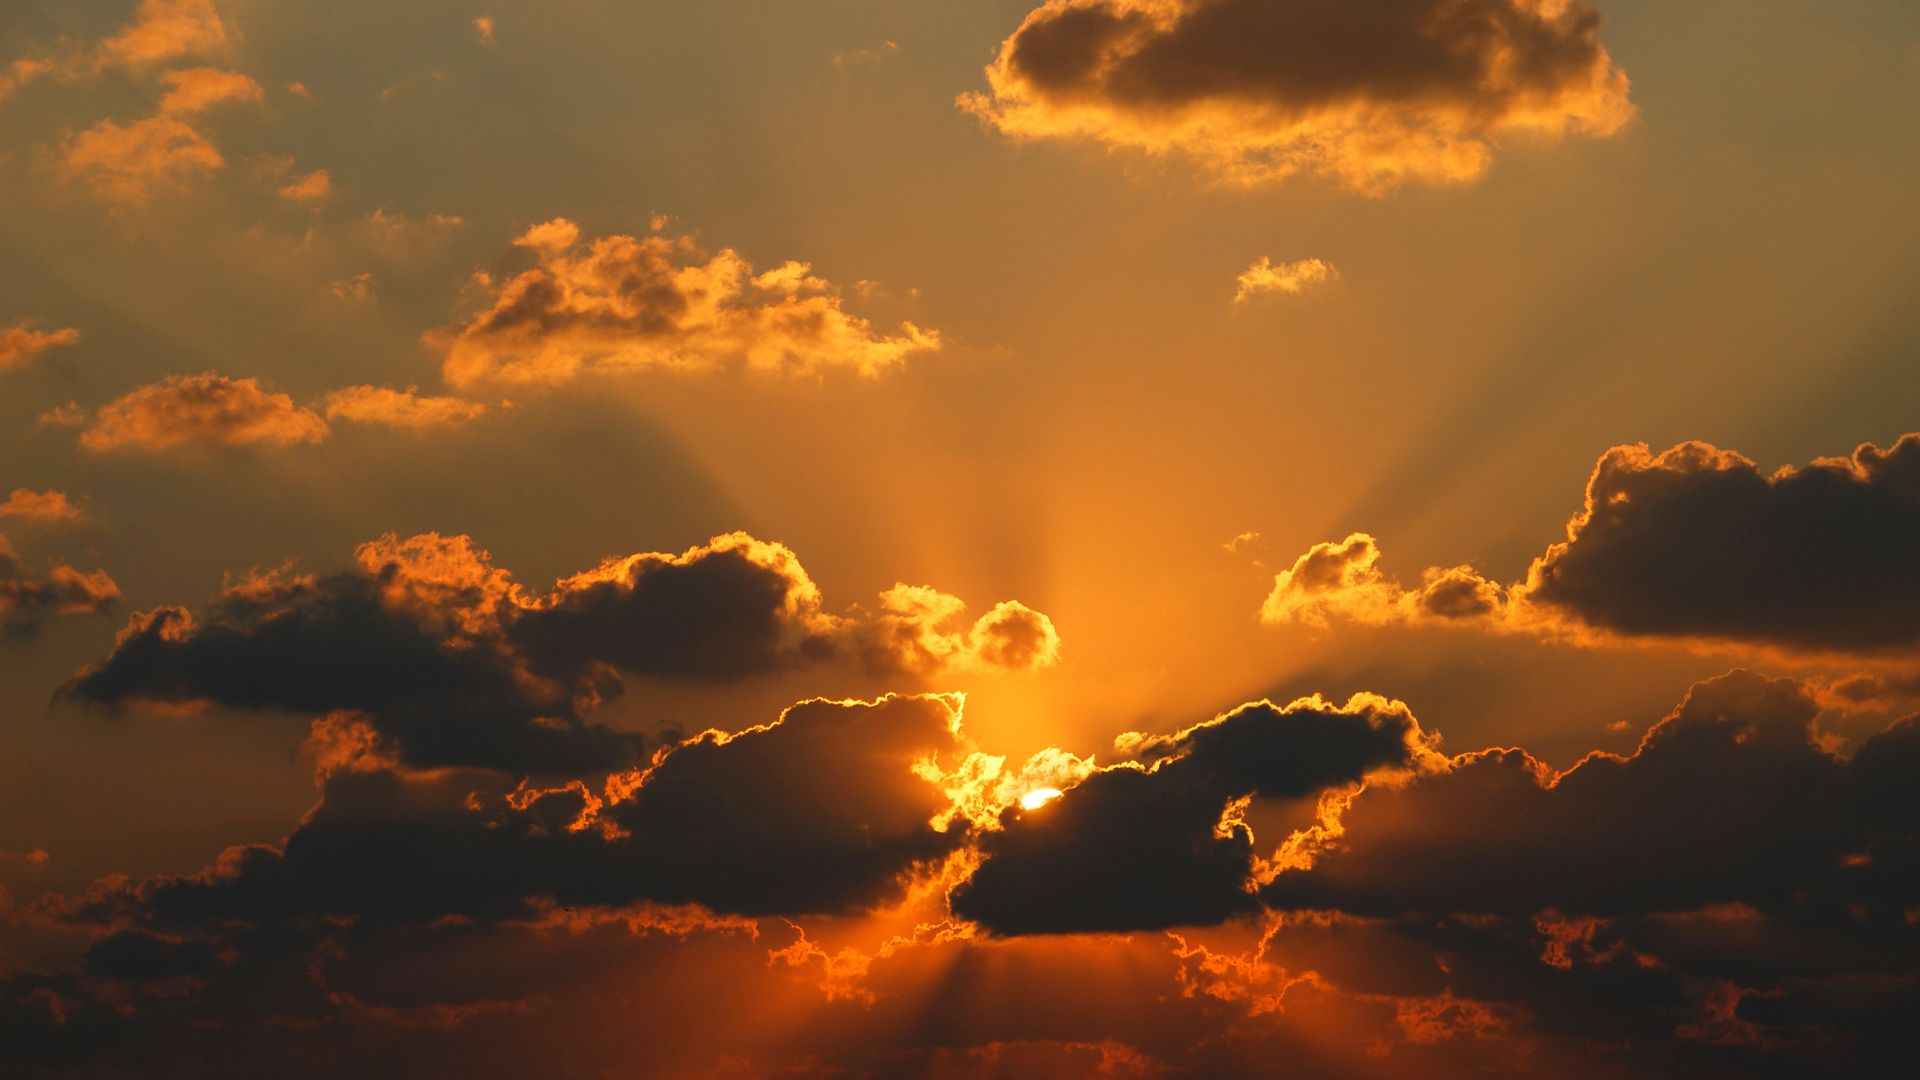 Widok na zachmurzone niebo przy zachodzie słońca – deizm odrzuca pieczę Boga nad takimi zjawiskami.